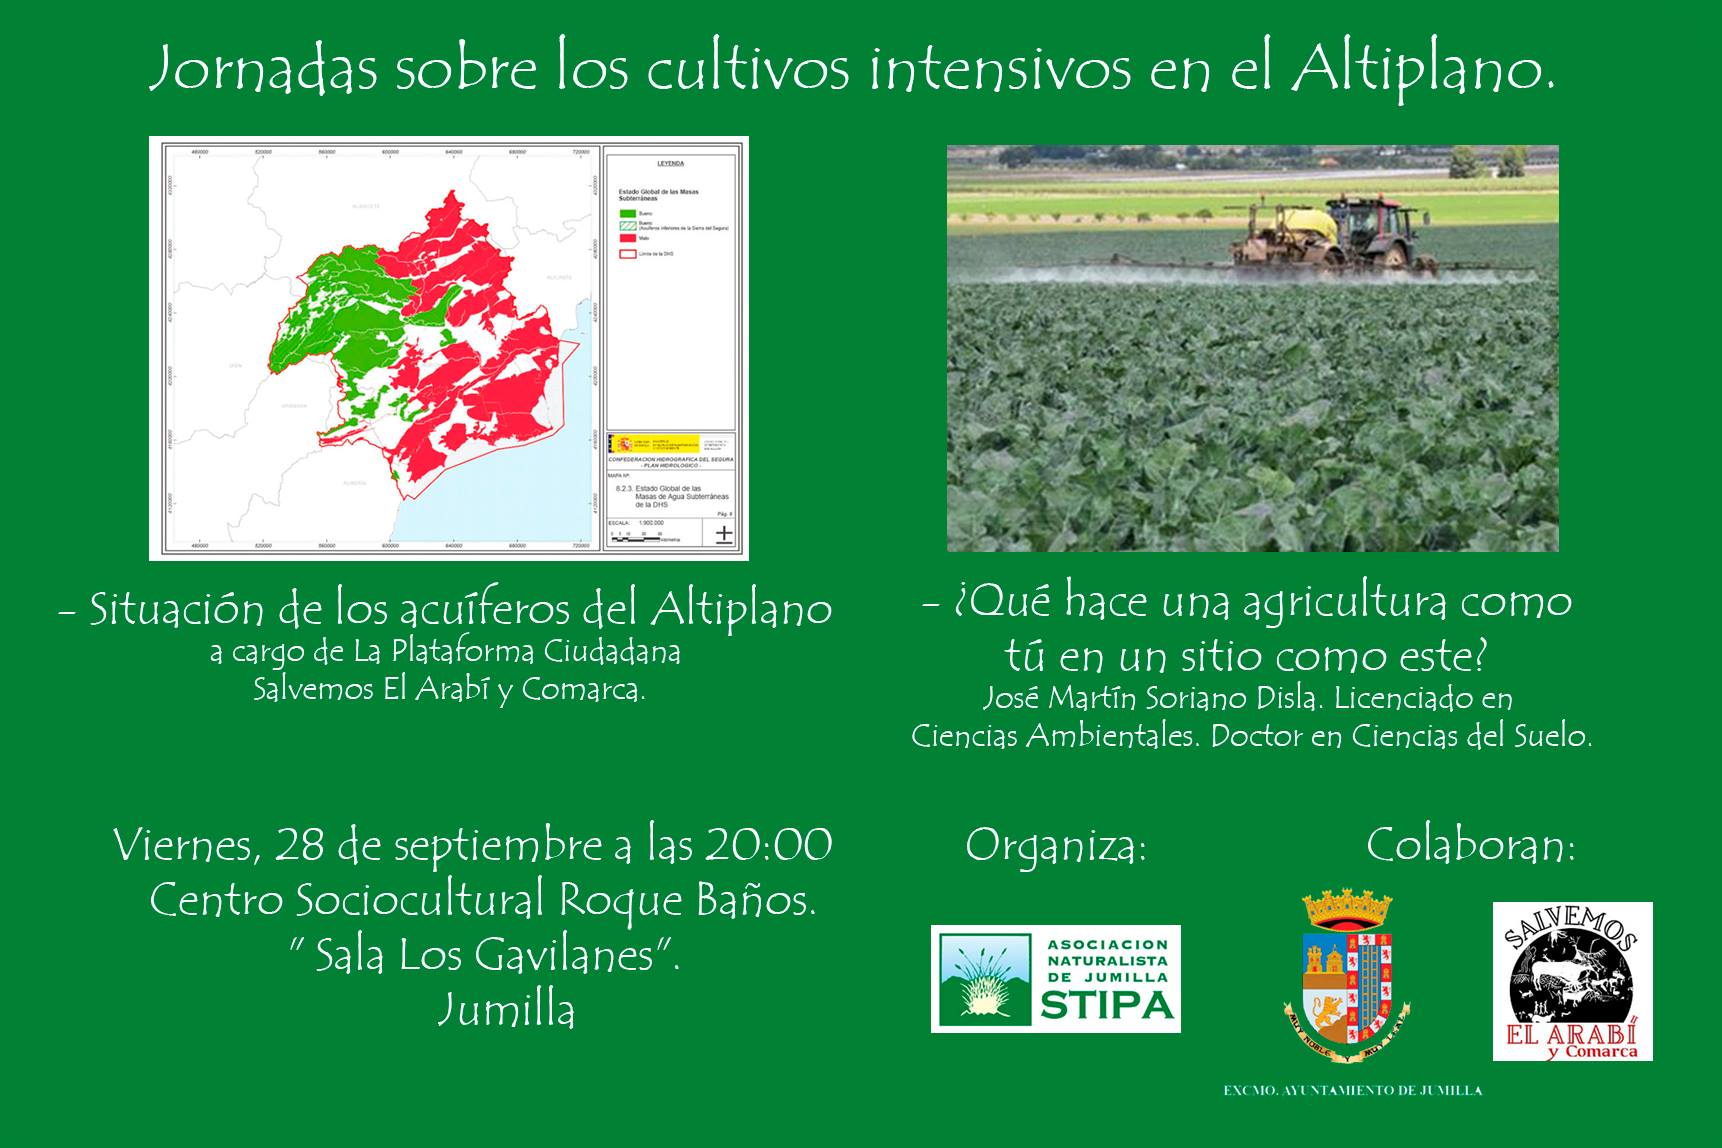 Stipa analizará en una charla la situación de los acuíferos en el Altiplano y el impacto de la agricultura extensiva